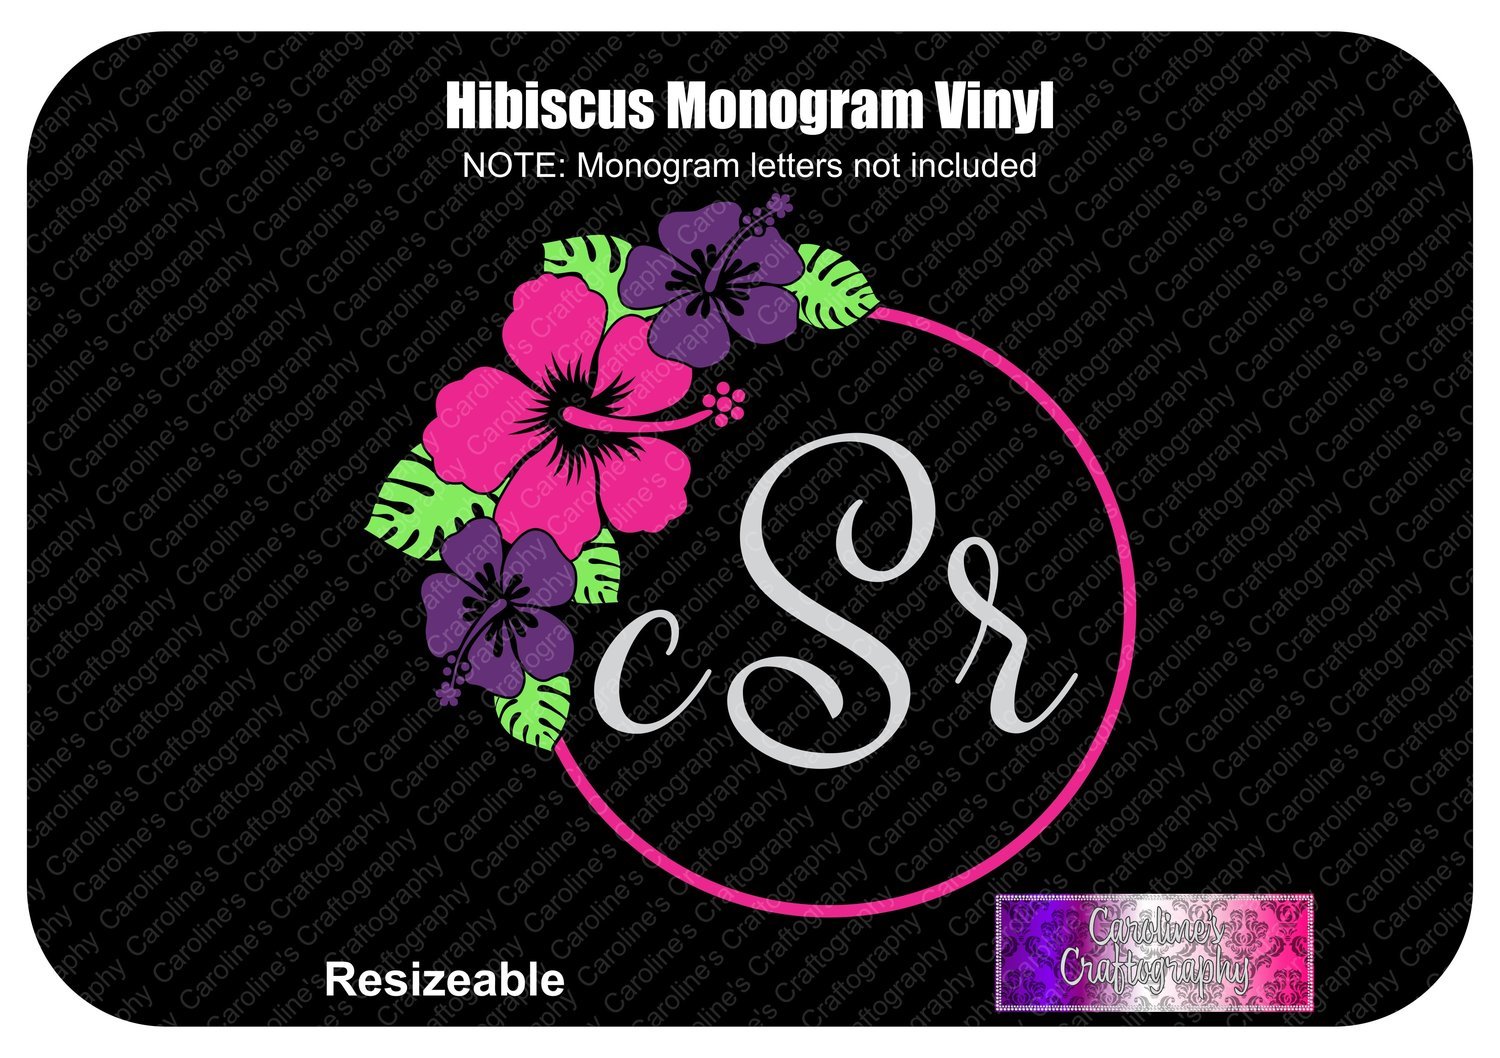 HIbiscus Monogram Frame Vinyl